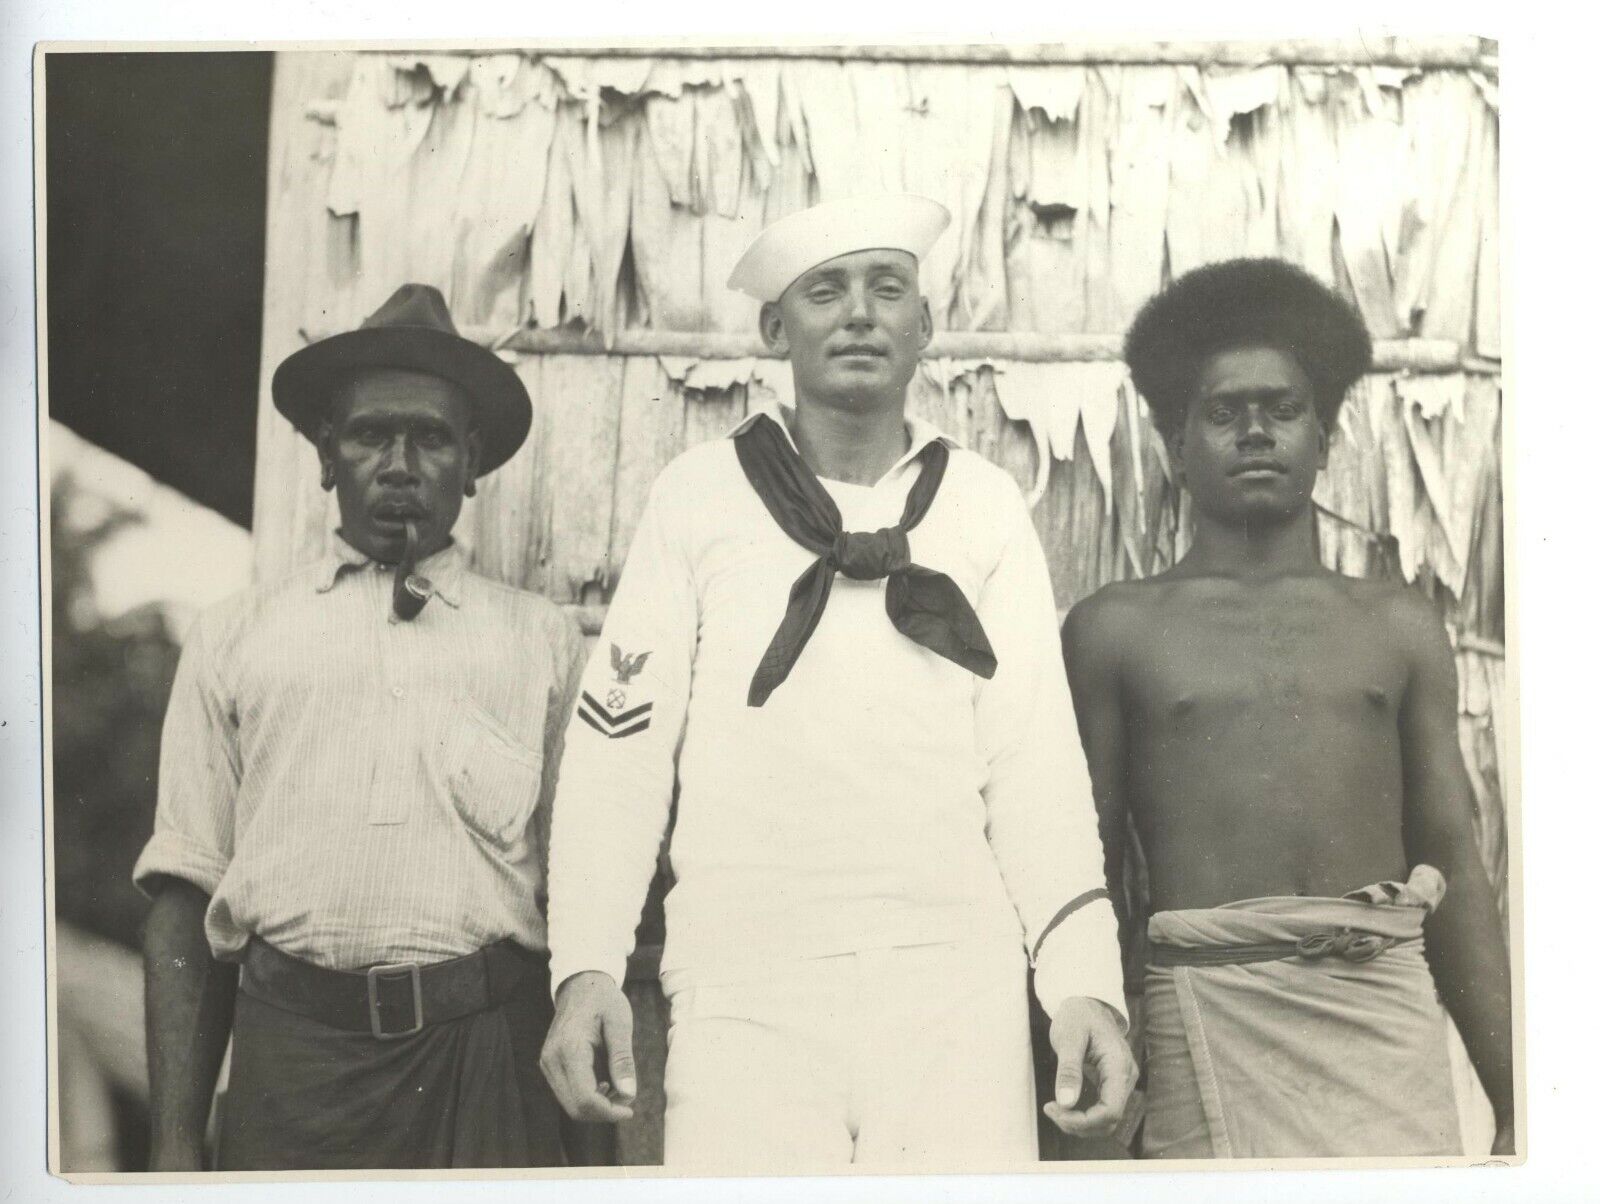 1924 ORIGINAL SOLOMON ISLANDS PHOTO SHORTLAND HARBOR VINTAGE ISLANDS